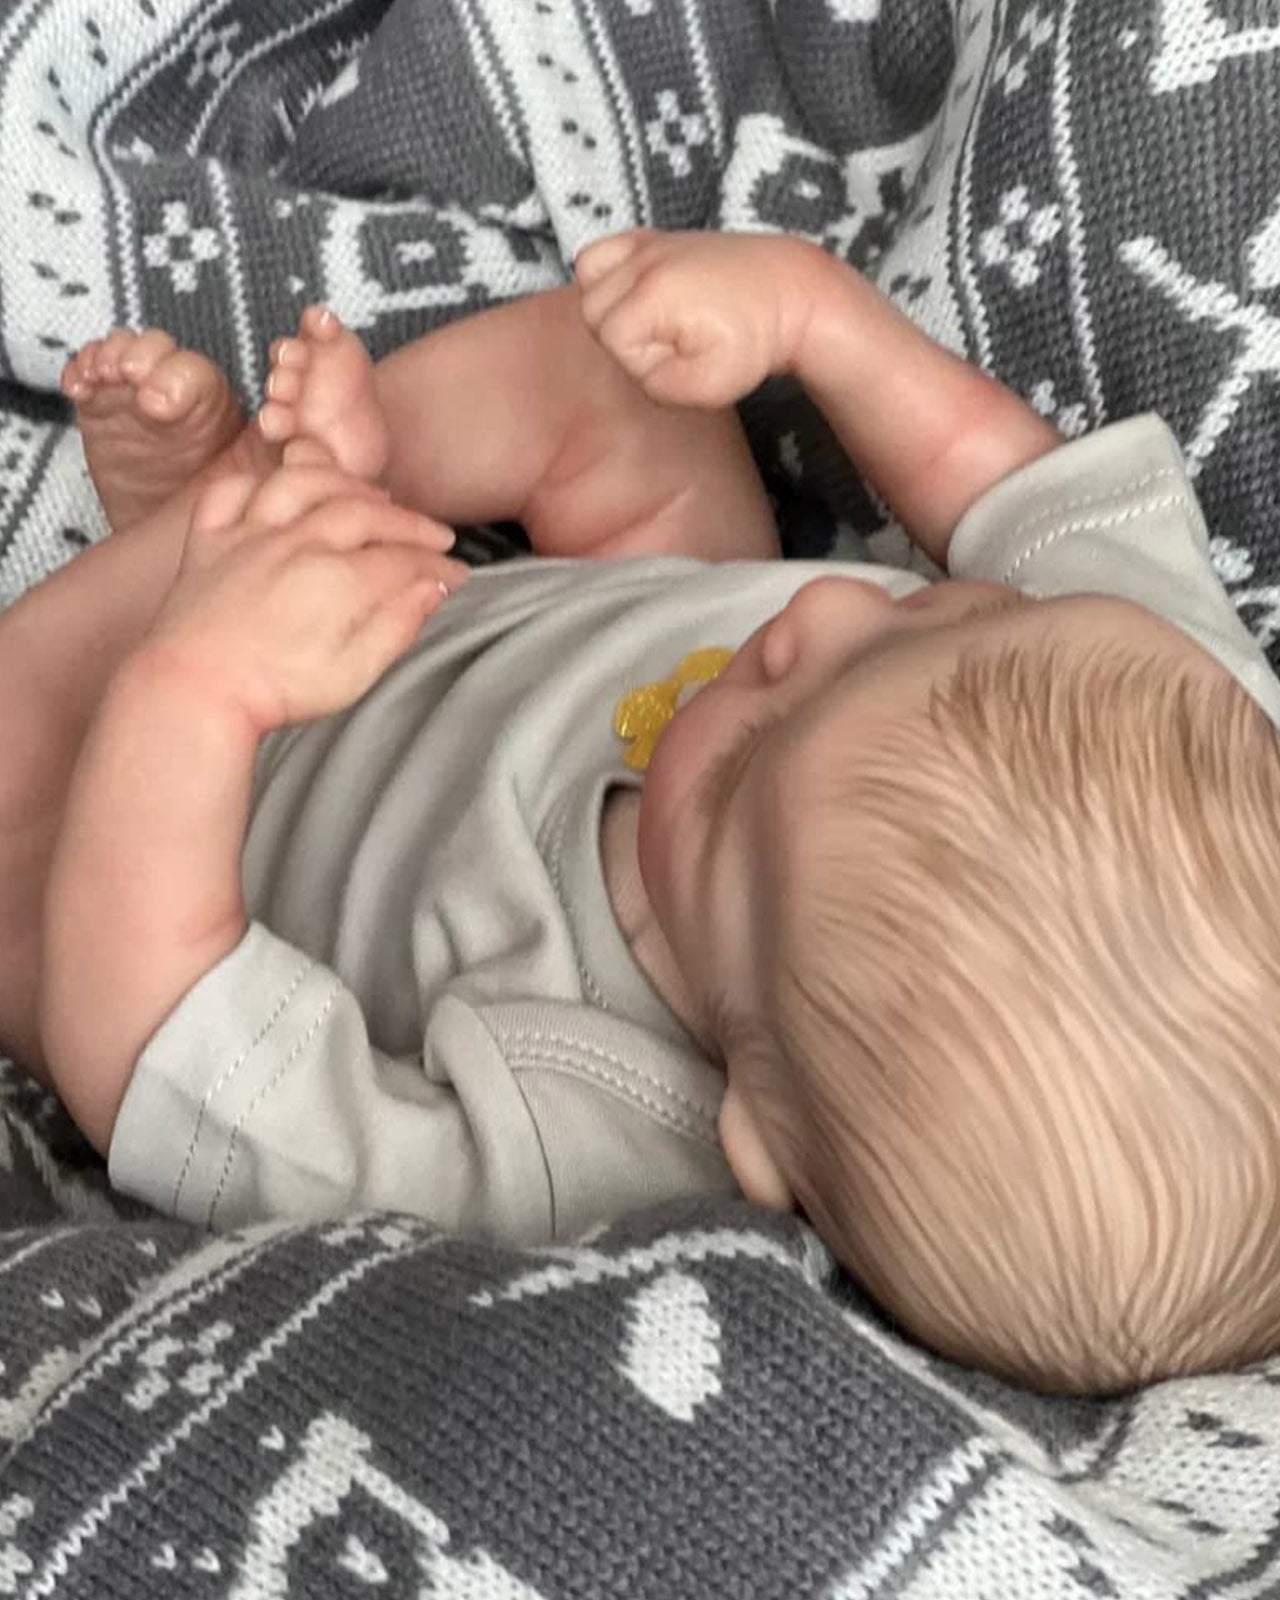 Bob - 17" Reborn Baby Dolls Realistic Sleeping Newborn Boy with Soft Silicone Vinyl Body